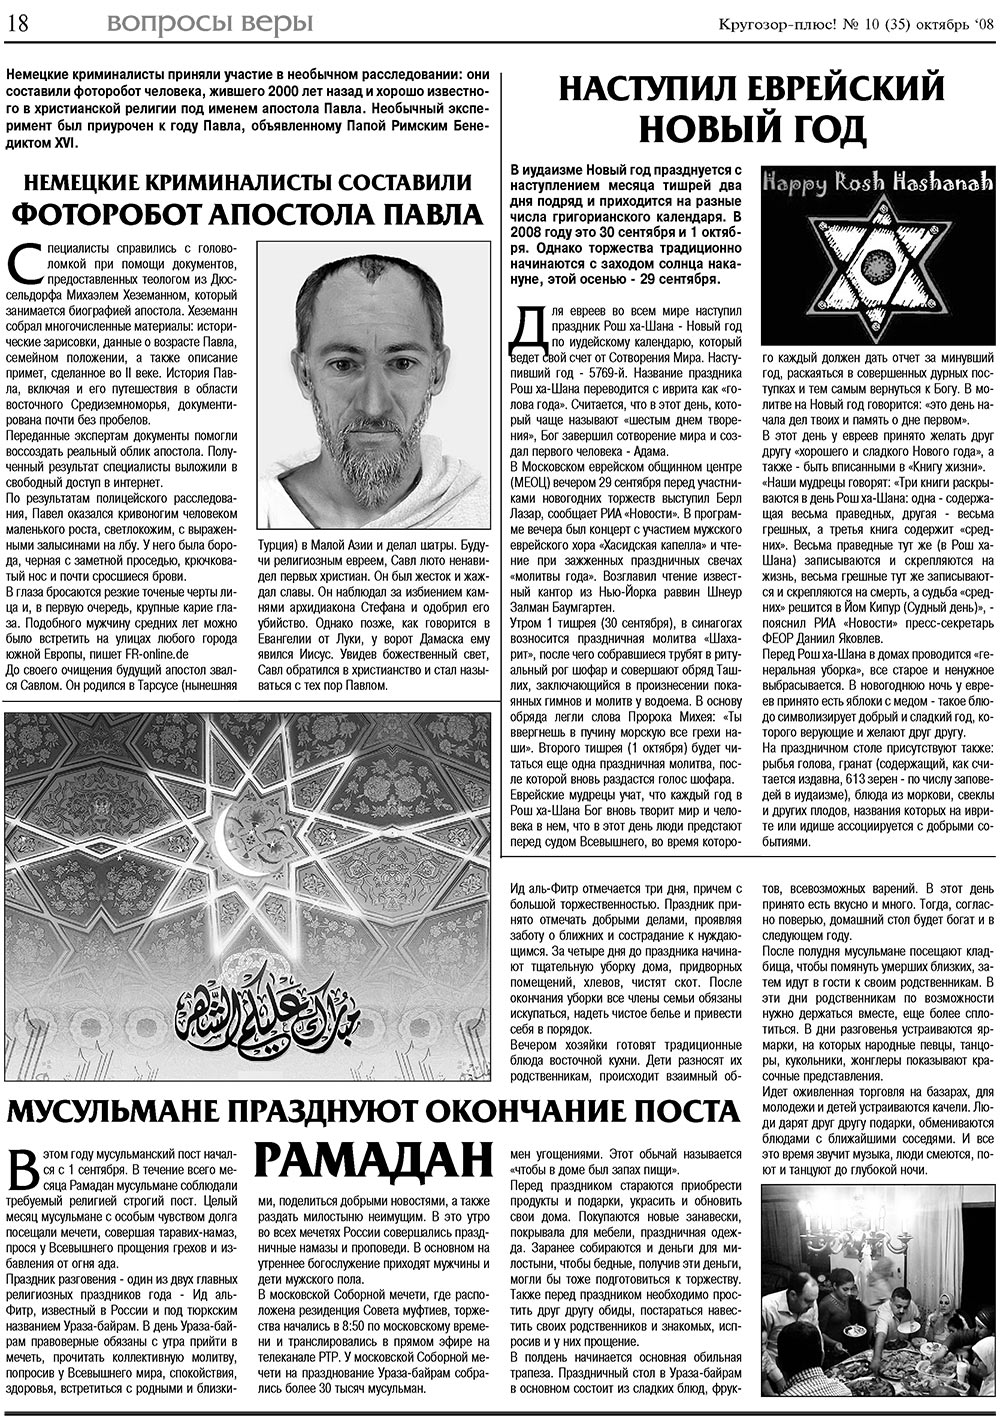 Кругозор плюс!, газета. 2008 №10 стр.18